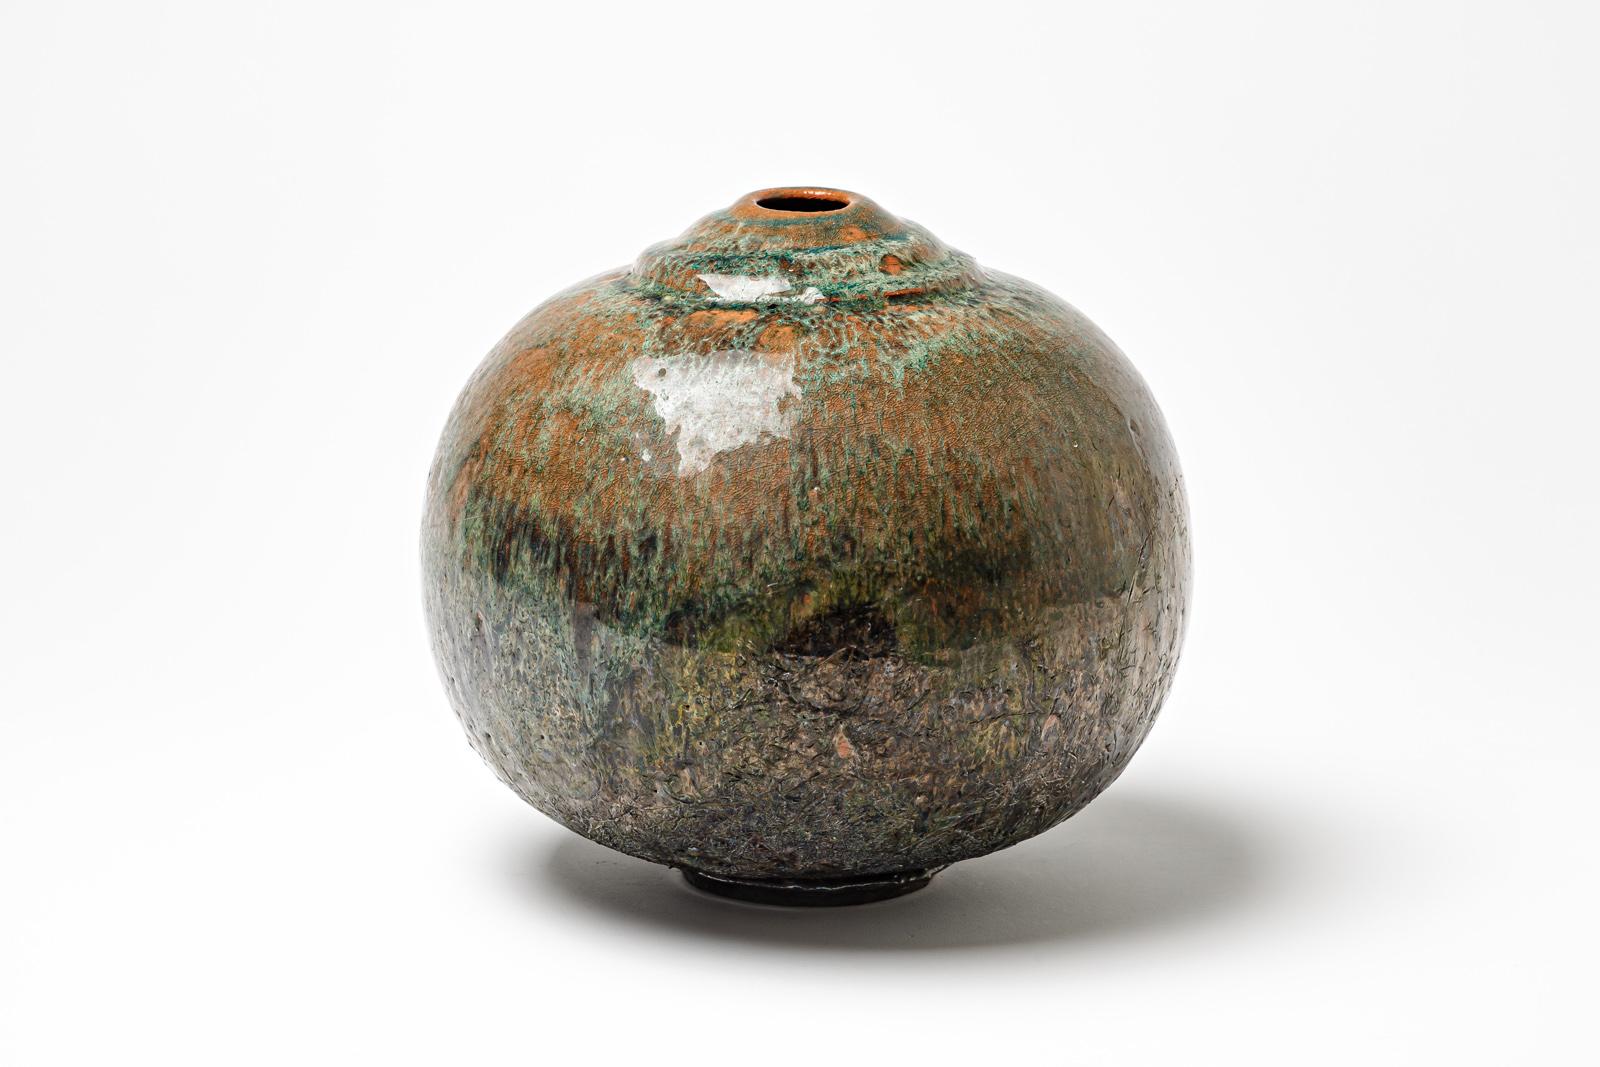 Vase en céramique émaillée brun/rouge et vert de Gisèle Buthod Garçon. 
Raku a tiré. Monogramme de l'artiste sous la base. Vers 1980-1990.
H : 8.7' x 7.8' pouces.